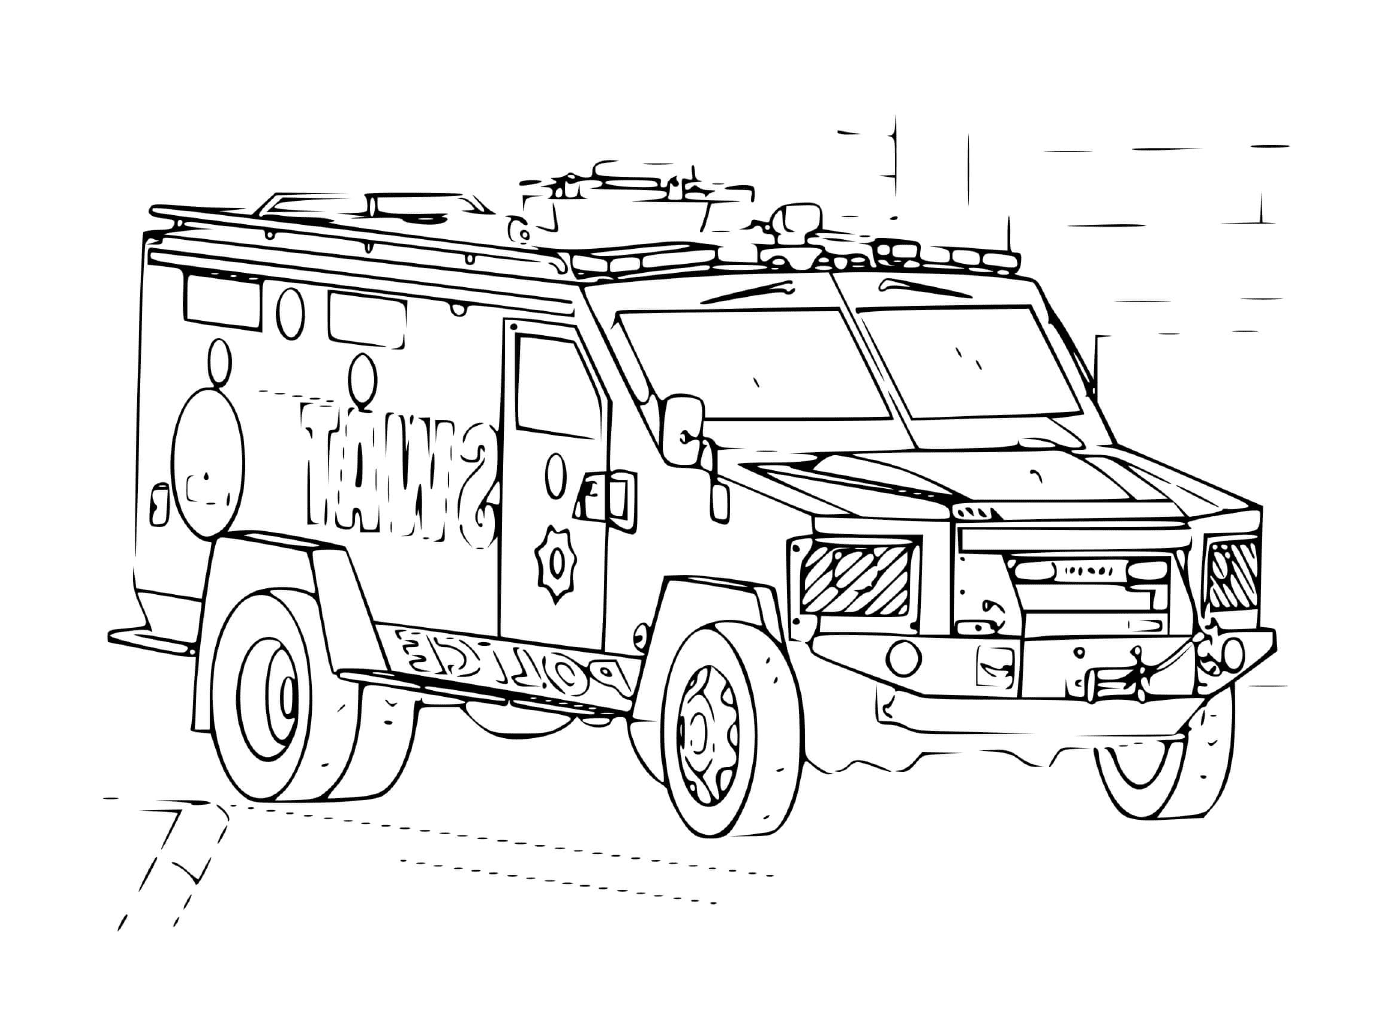  Veículo SWAT para intervenção 